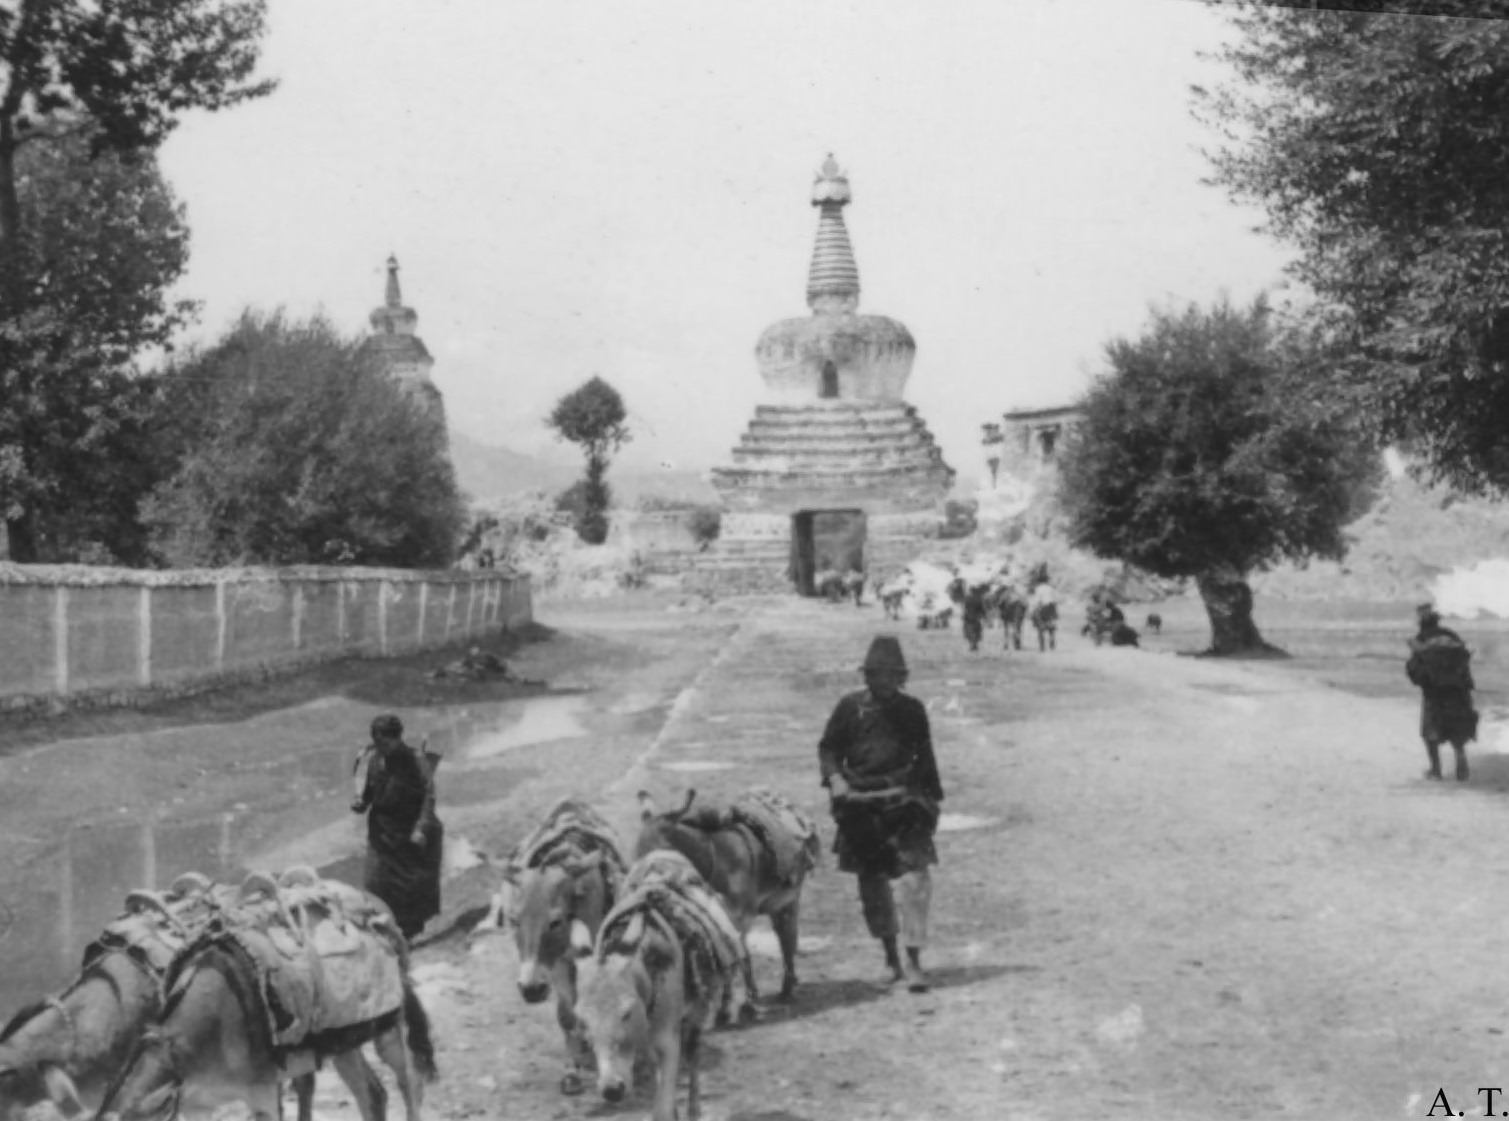 Gateway to Lhasa, 1944